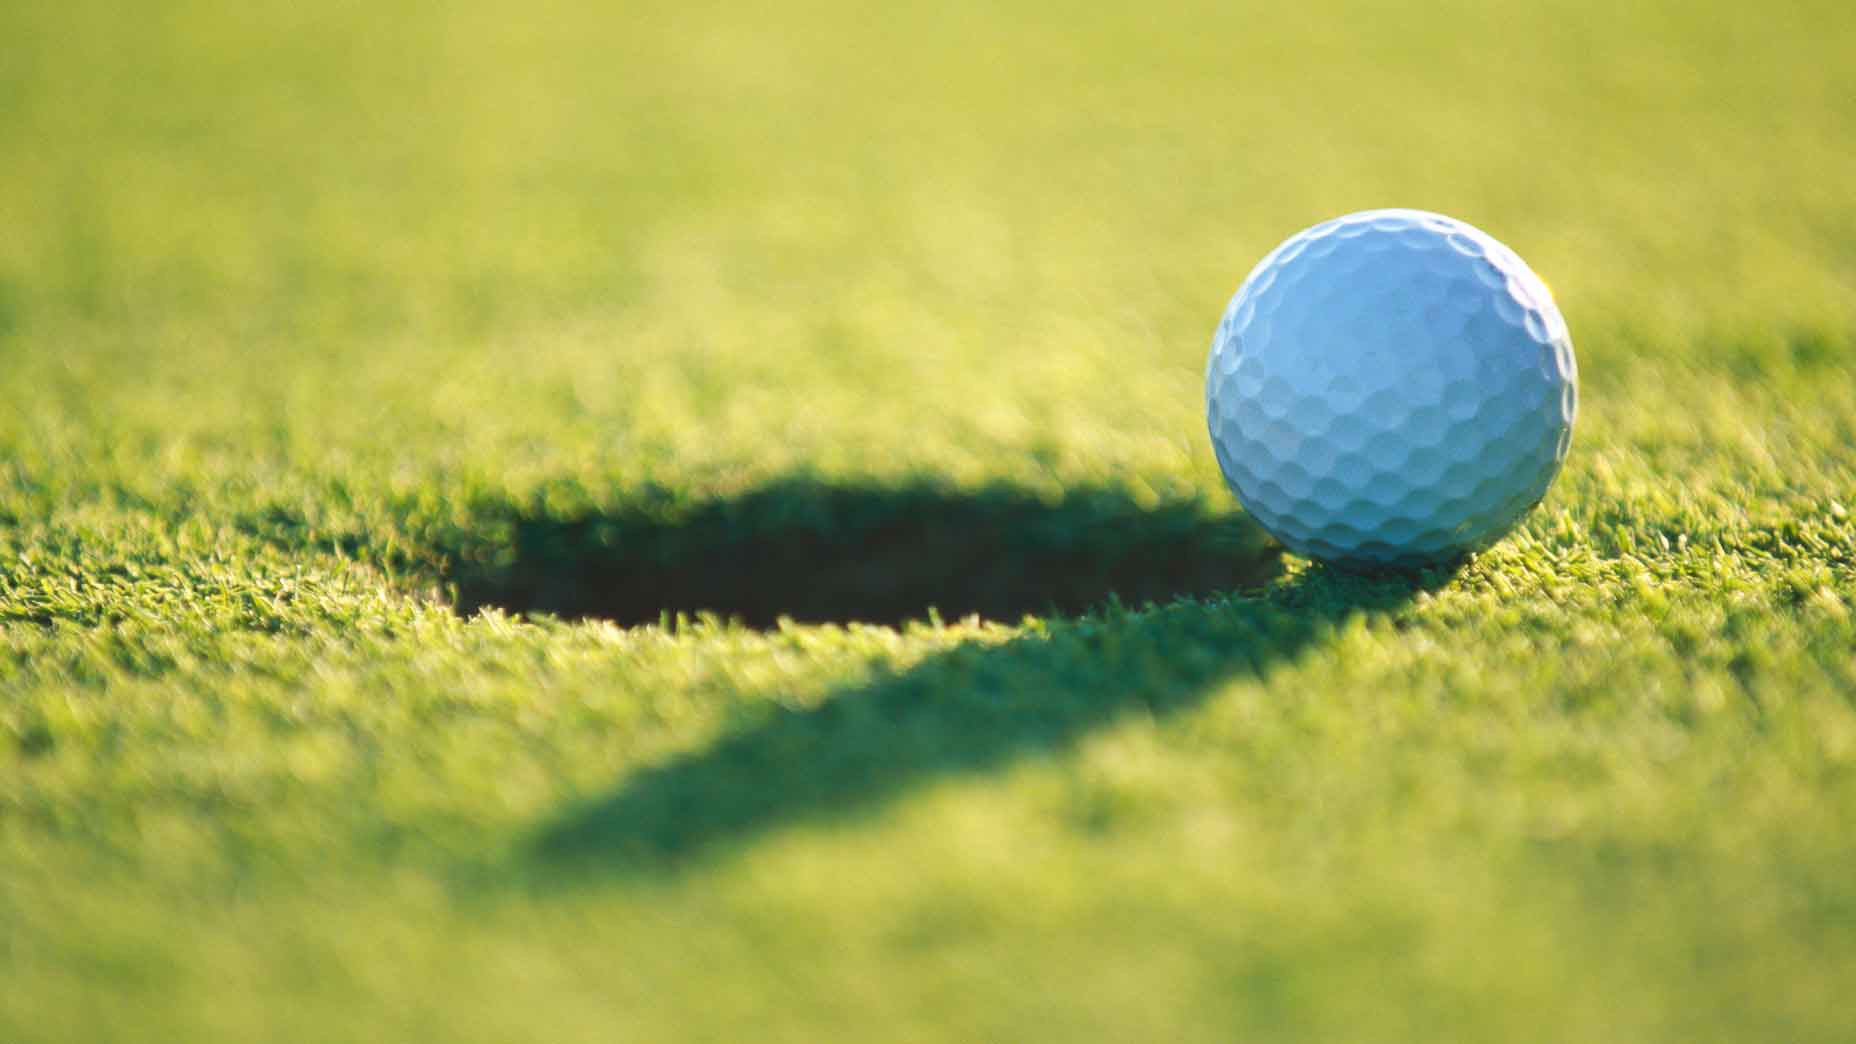 Luật 10 giây trong golf là gì?